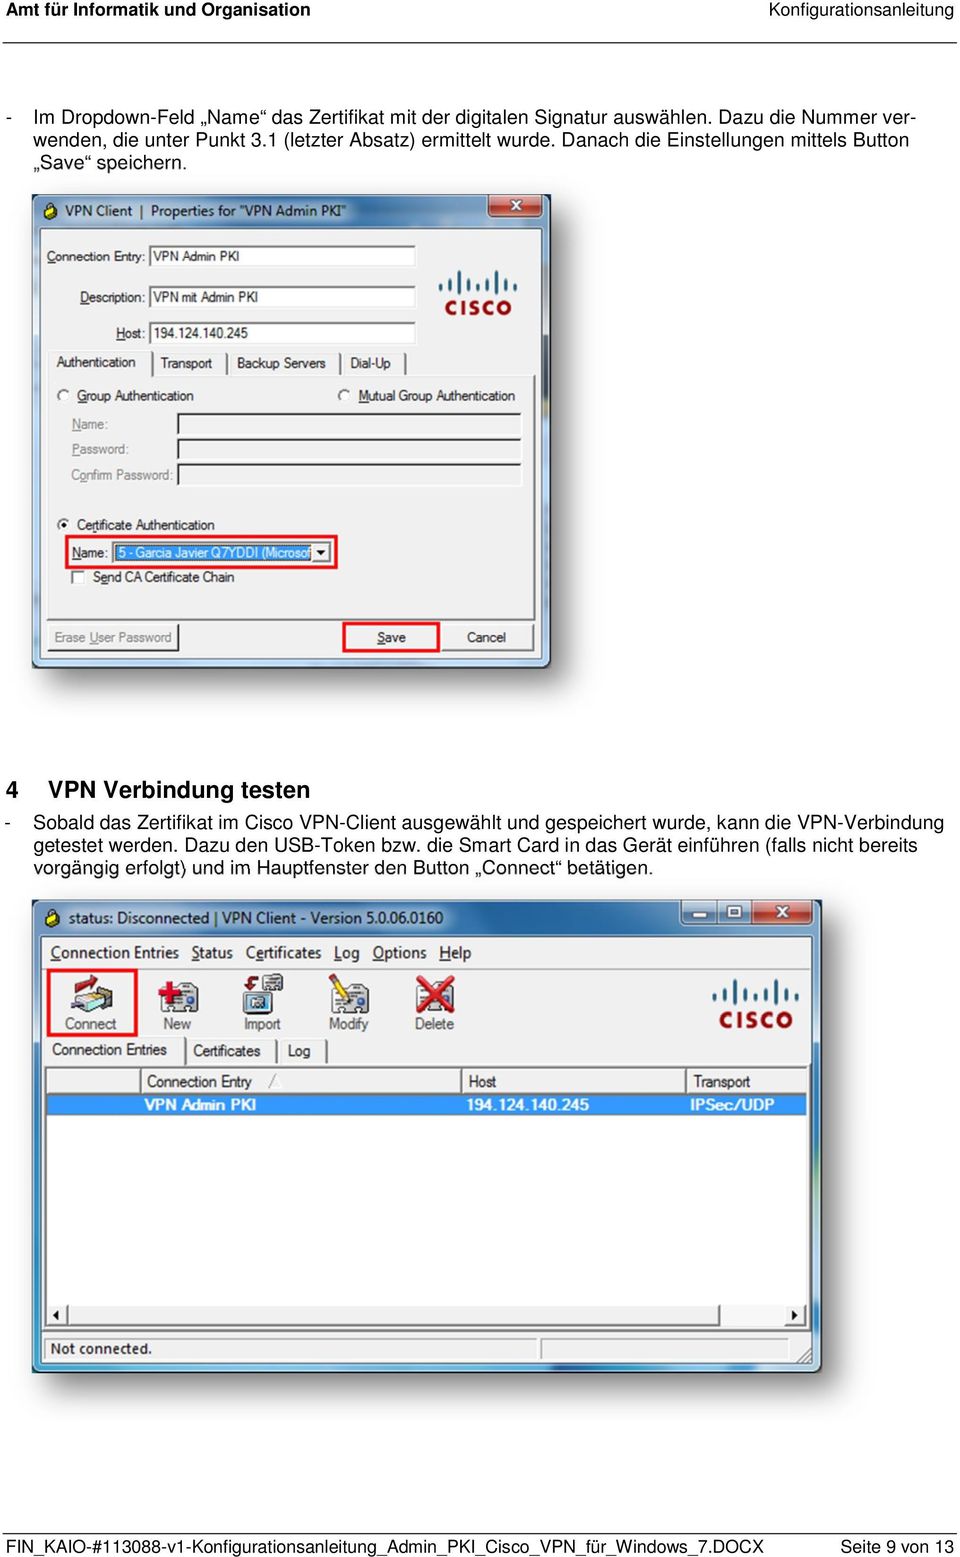 4 VPN Verbindung testen - Sobald das Zertifikat im Cisco VPN-Client ausgewählt und gespeichert wurde, kann die VPN-Verbindung getestet werden.